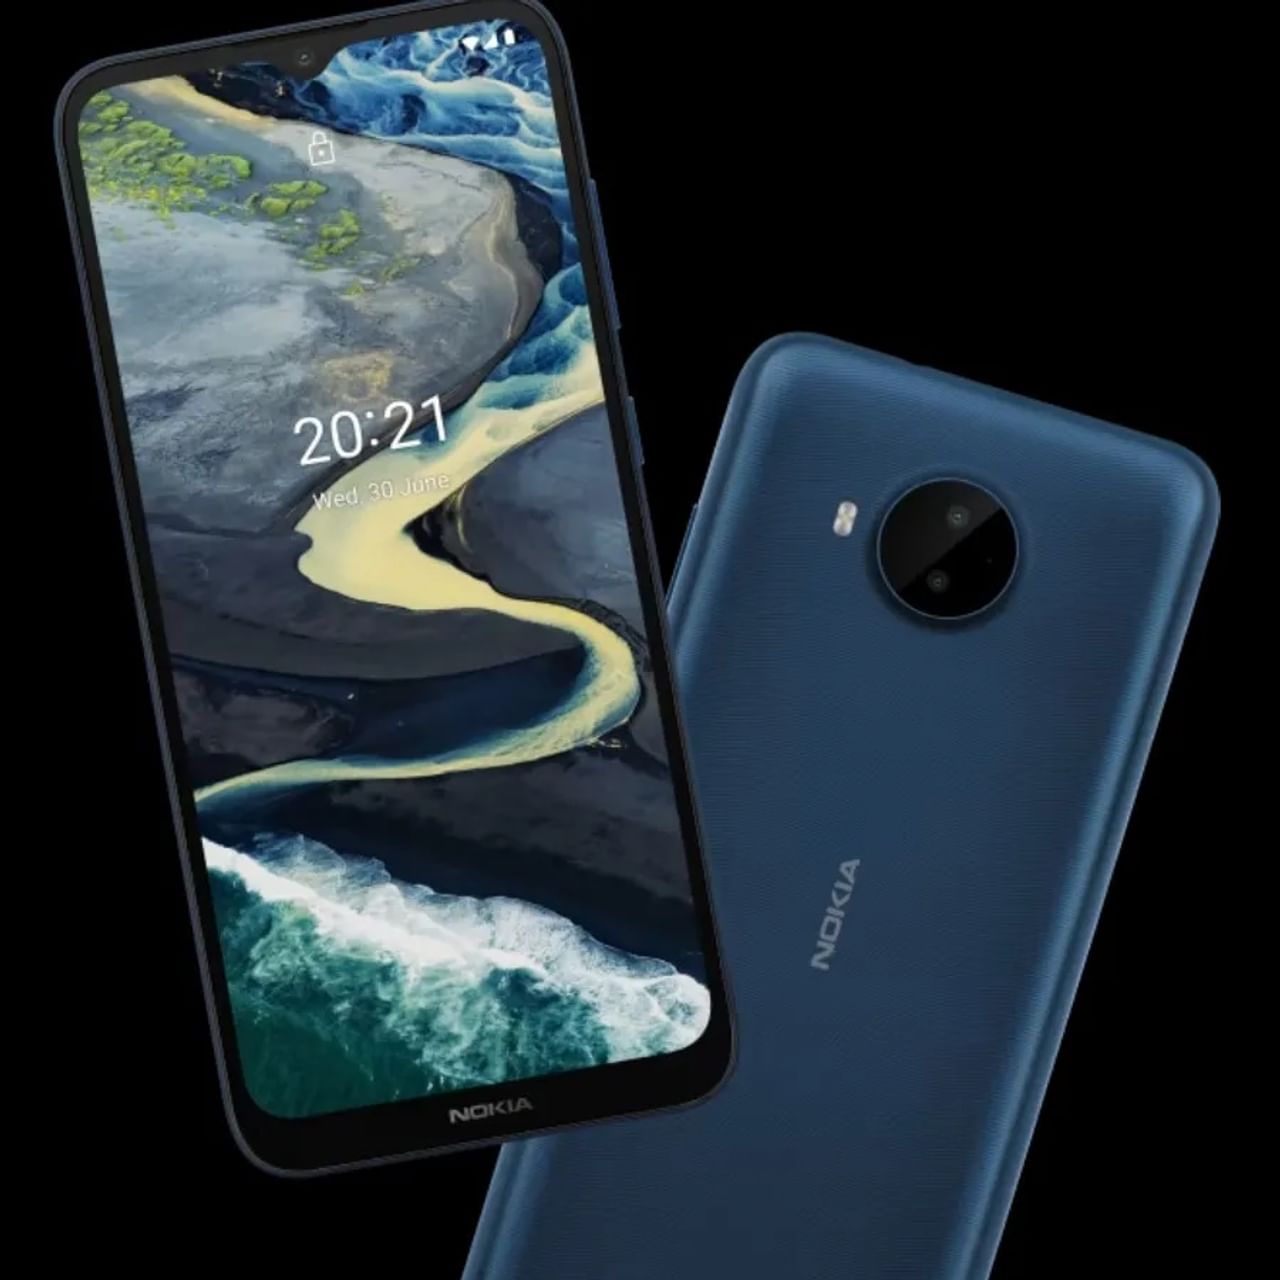 Nokia C20 Plus स्पेसिफिकेशन: फोनमध्ये 6.5-इंचाचा HD Plus (720x1600 pixels) डिस्प्ले आहे जो 20:9 आस्पेक्ट रेशोसह येतो. फोनमध्ये स्पीड आणि मल्टीटास्किंगसाठी ऑक्टा-कोर युनिसॉक SC9863a चिपसेट वापरण्यात आला आहे. कॅमेरा सेटअप बद्दल बोलायचे झाले तर फोनच्या मागील पॅनल वर डुअल रियर कॅमेरा सेटअप आहे, 8 मेगापिक्सल चा प्राइमरी कॅमेरा सेन्सर सह 2 मेगापिक्सल डेप्थ कॅमेरा उपलब्ध असेल. सेल्फीसाठी 5 मेगापिक्सेल फ्रंट कॅमेरा सेन्सर आहे. फोनमध्ये जिवंतपणा आणण्यासाठी 10 W फास्ट चार्ज सपोर्टसह 4950 mAh बॅटरी देण्यात आली आहे.